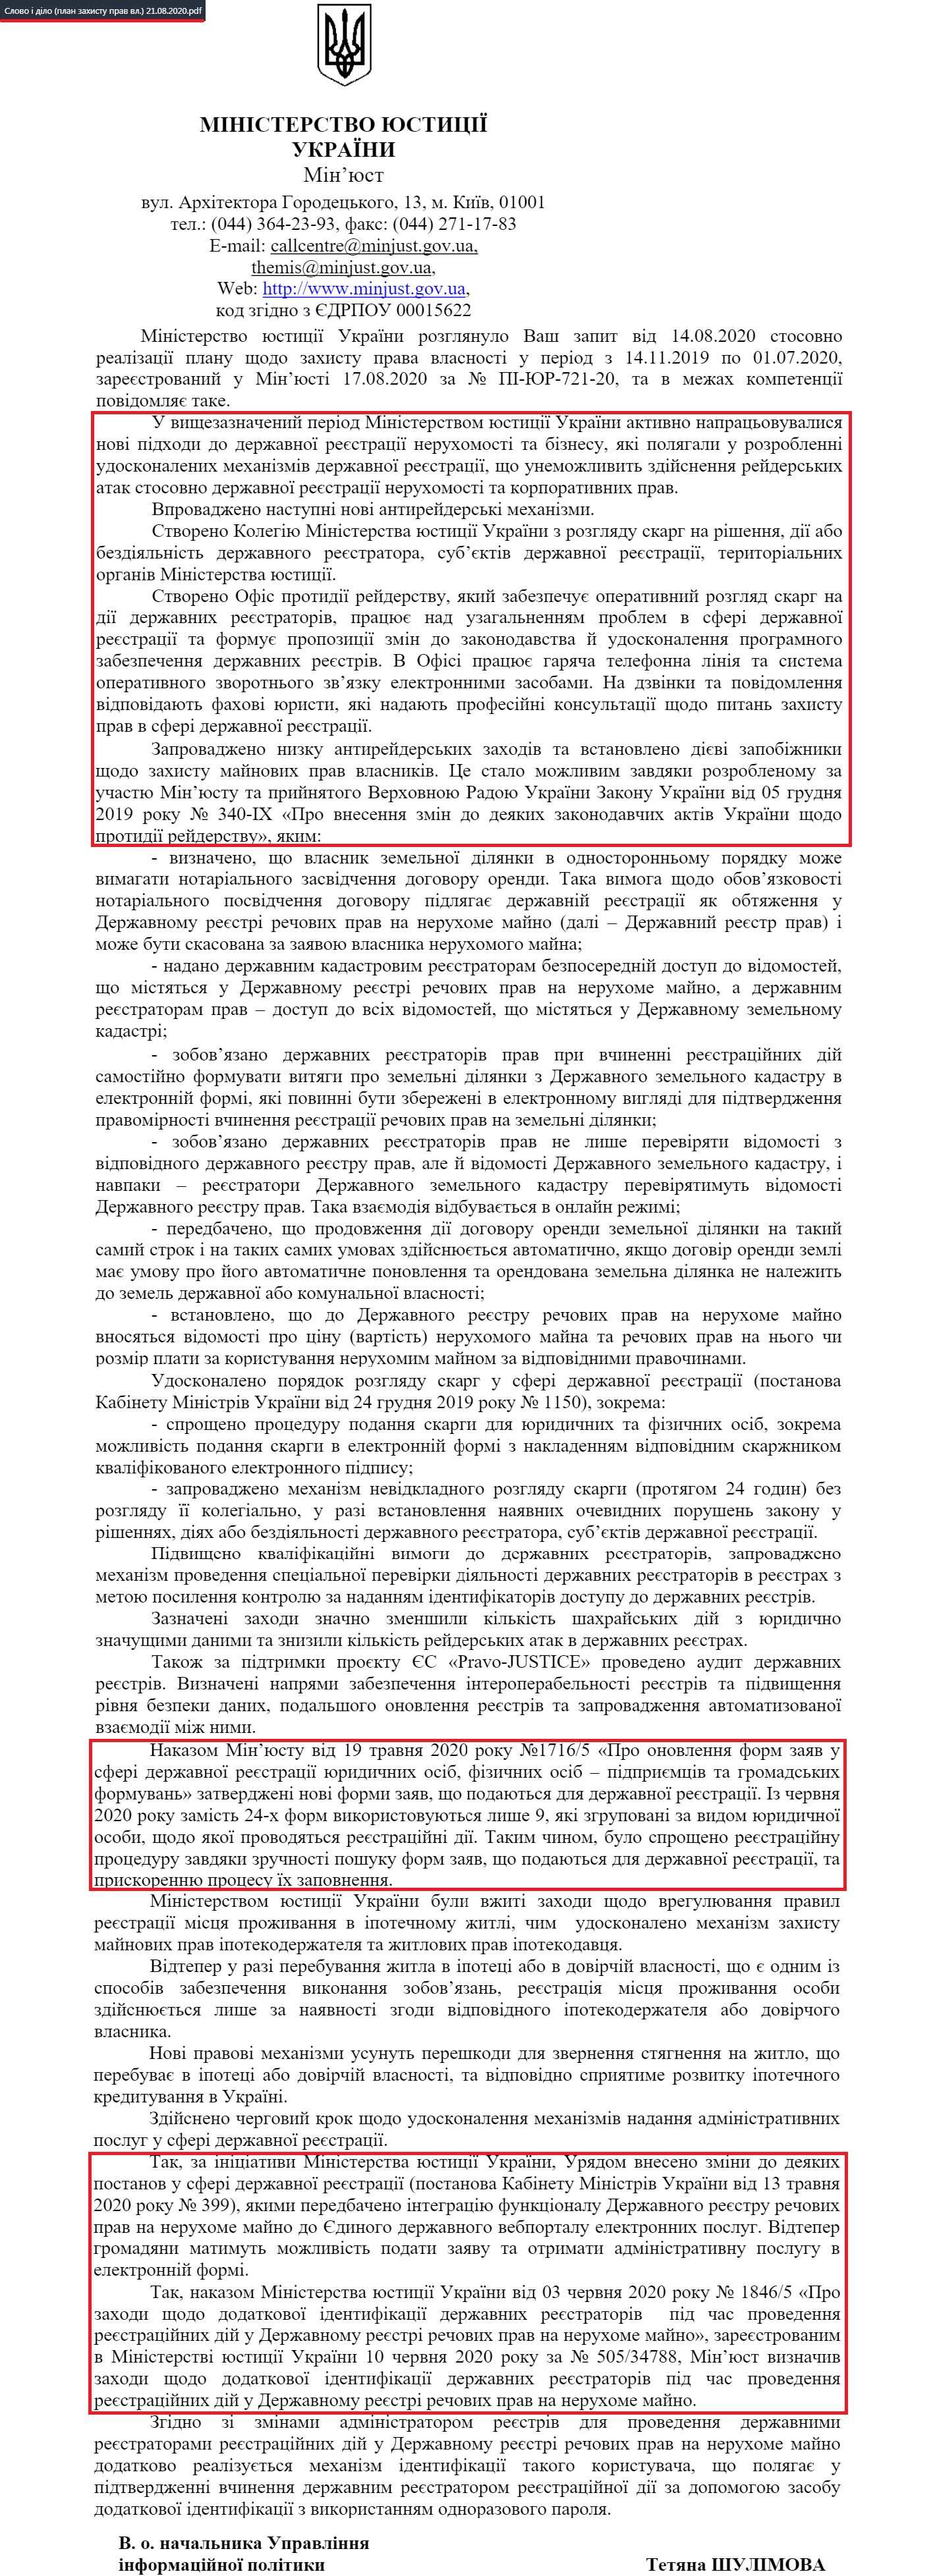 Лист Міністерства юстиції України від 21 серпня 2020 року